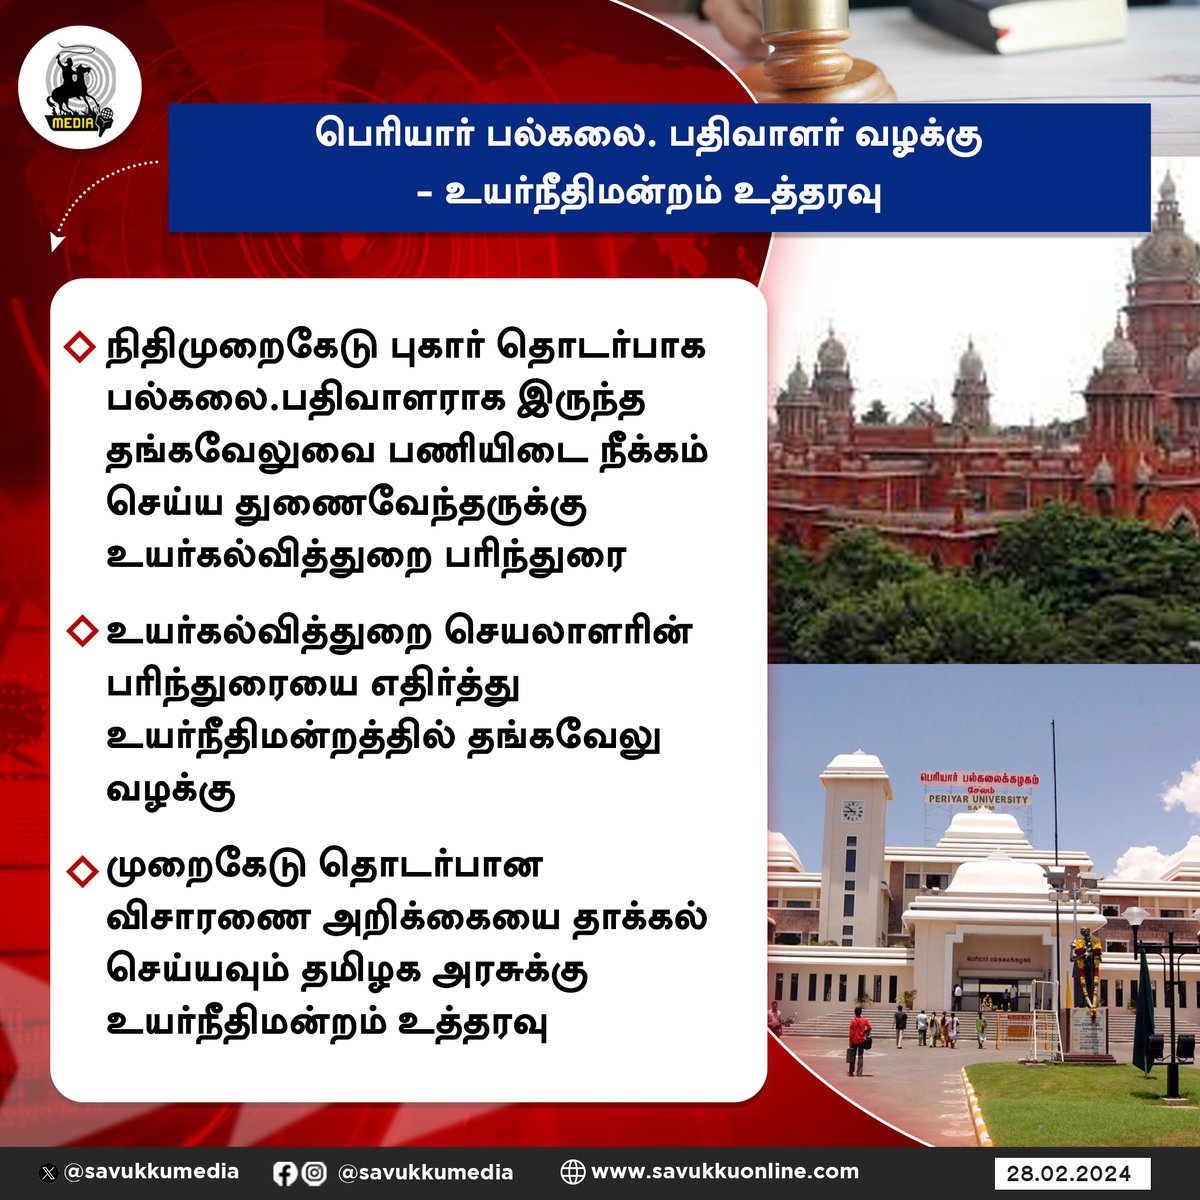 பெரியார் பல்கலை. பதிவாளர் வழக்கு - உயர்நீதிமன்றம் உத்தரவு

#PeriyarUniversity #MadrasHC #TnGovt #TamilNadu #savukkumedia #savukkunews

@SavukkuOfficial | @MuthaleefAbdul